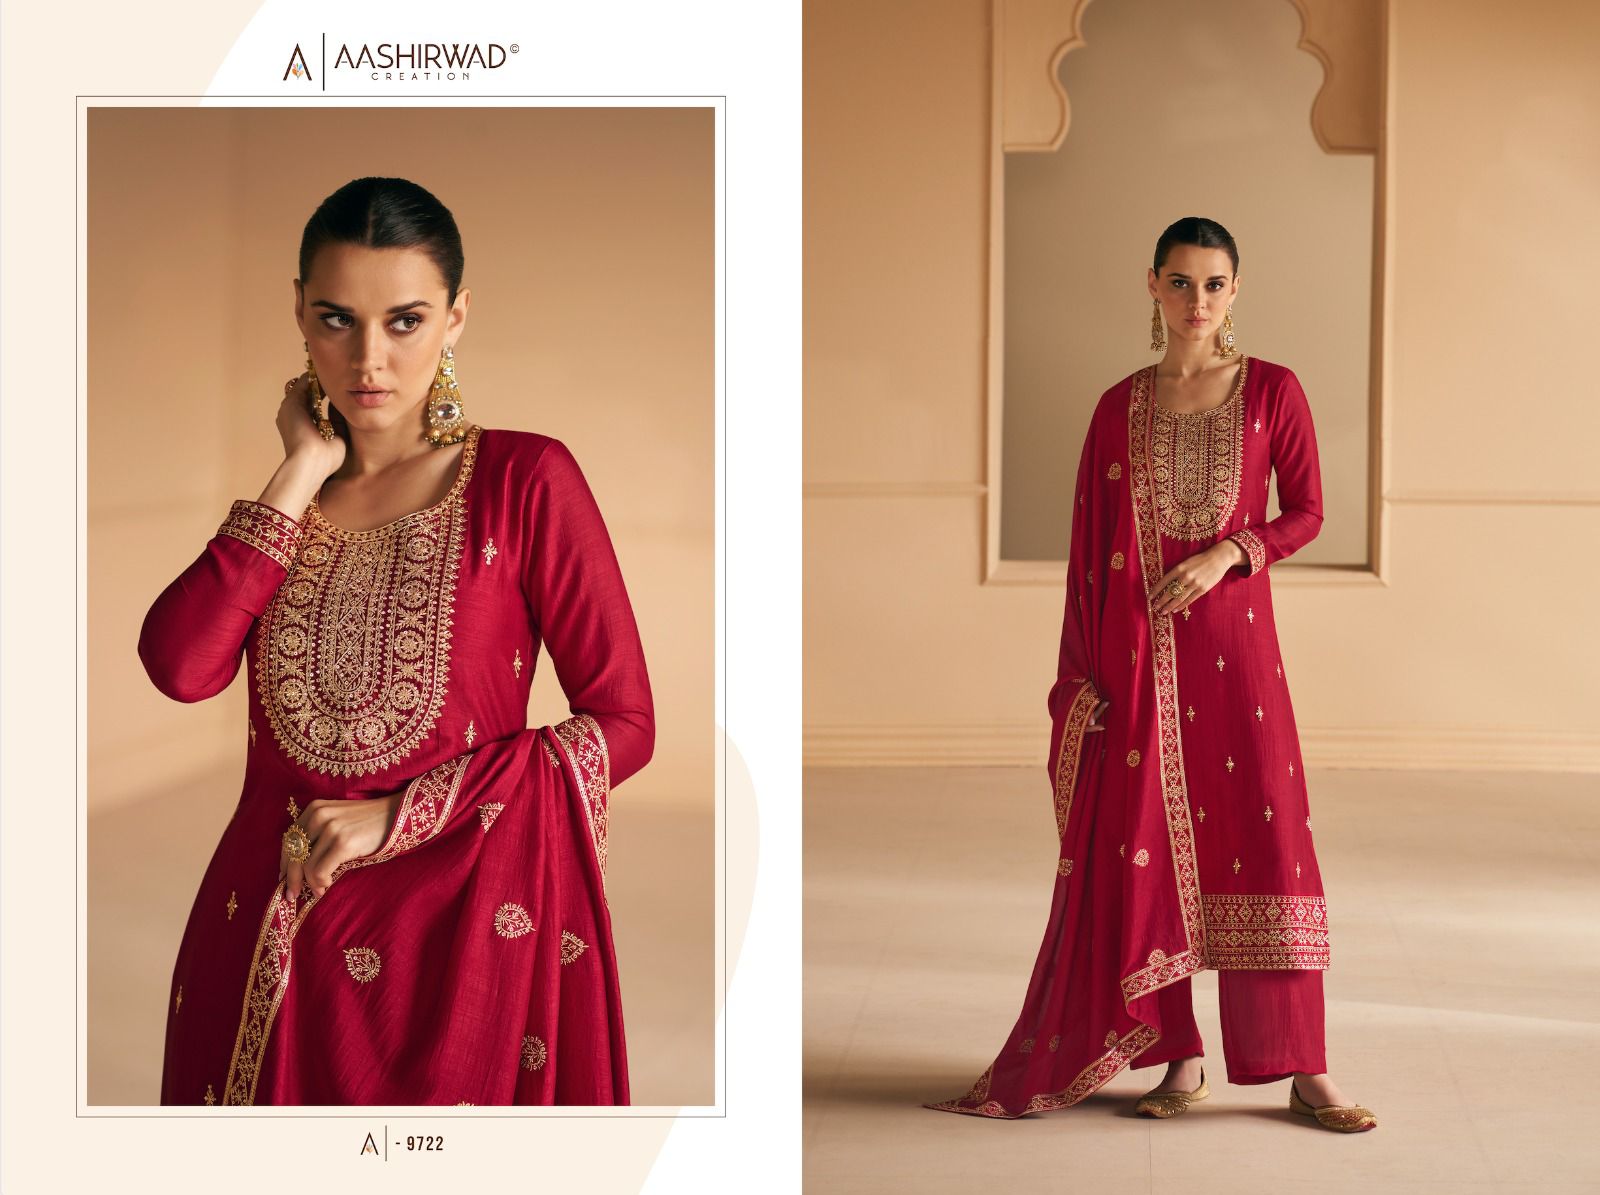 aashirwad creation geetika silk innovative look salwar suit catalog